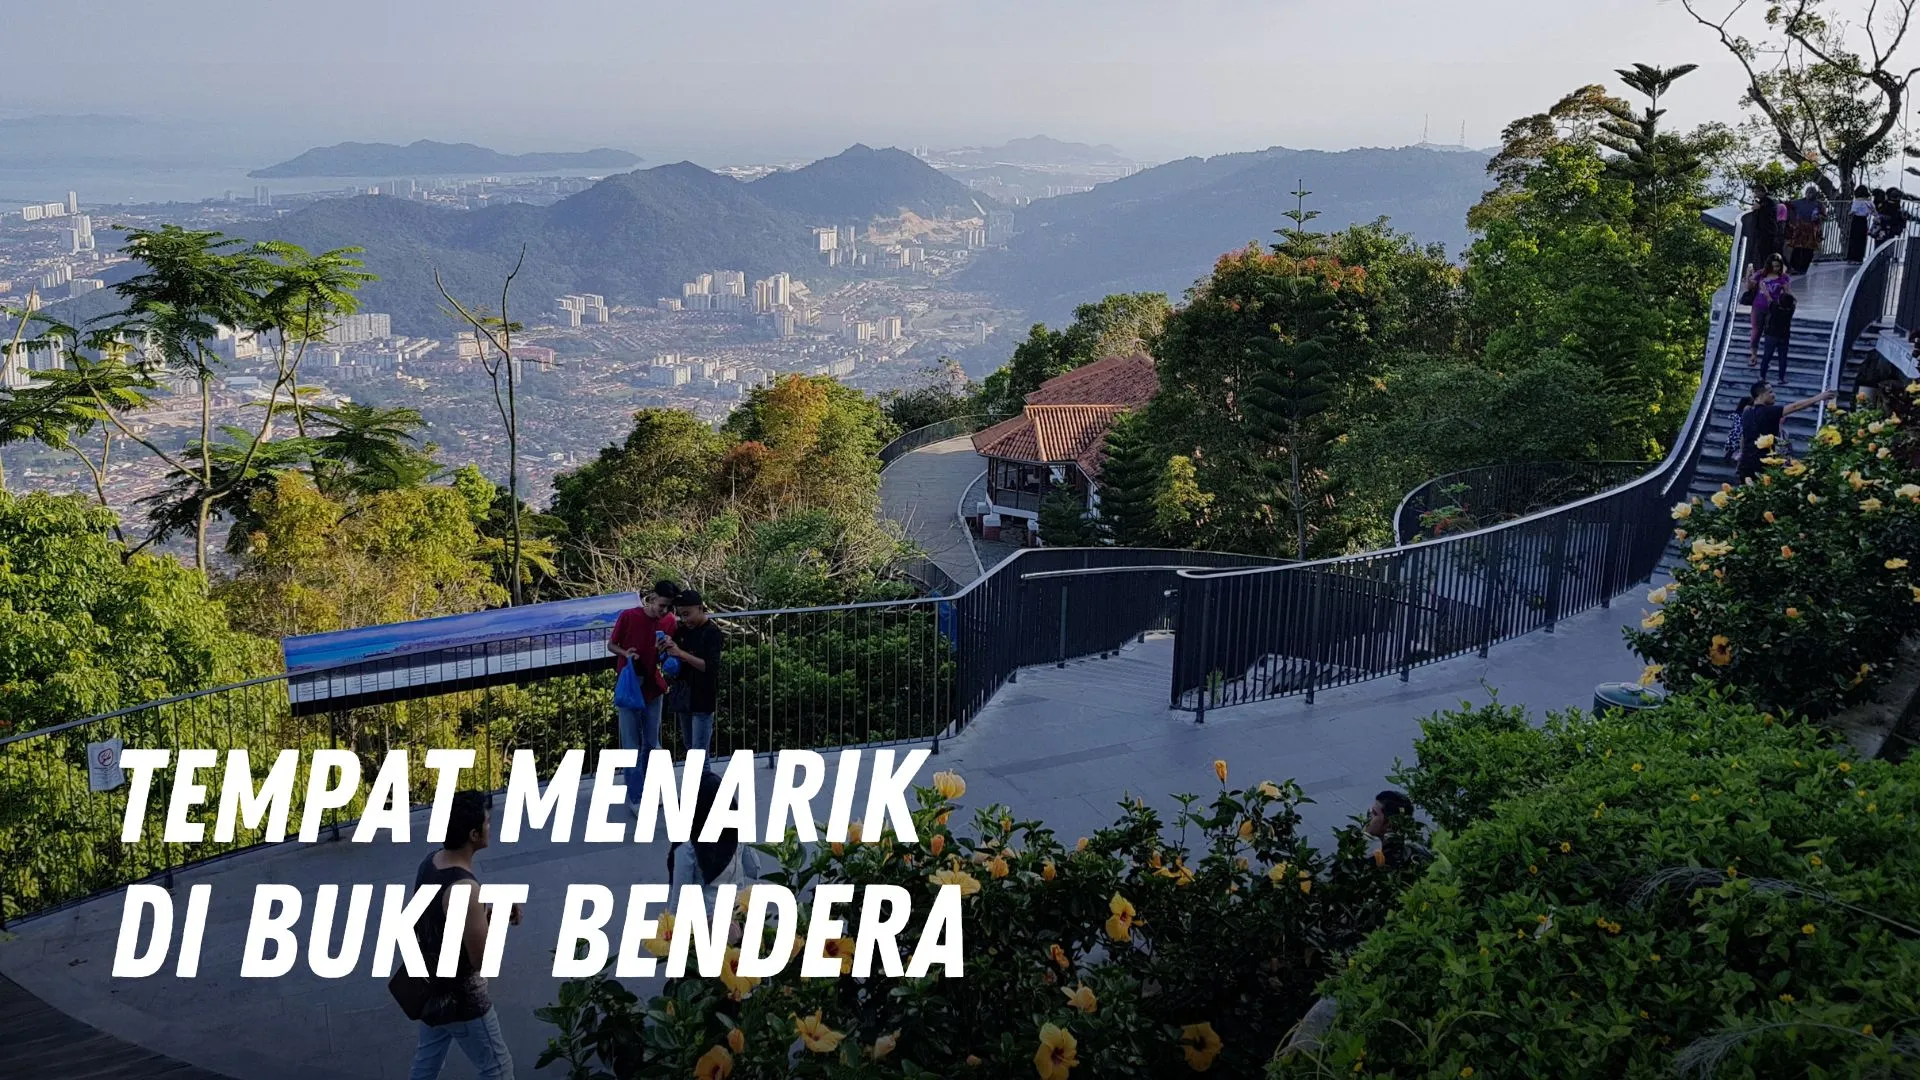 Tempat menarik di Bukit Bendera Malaysia